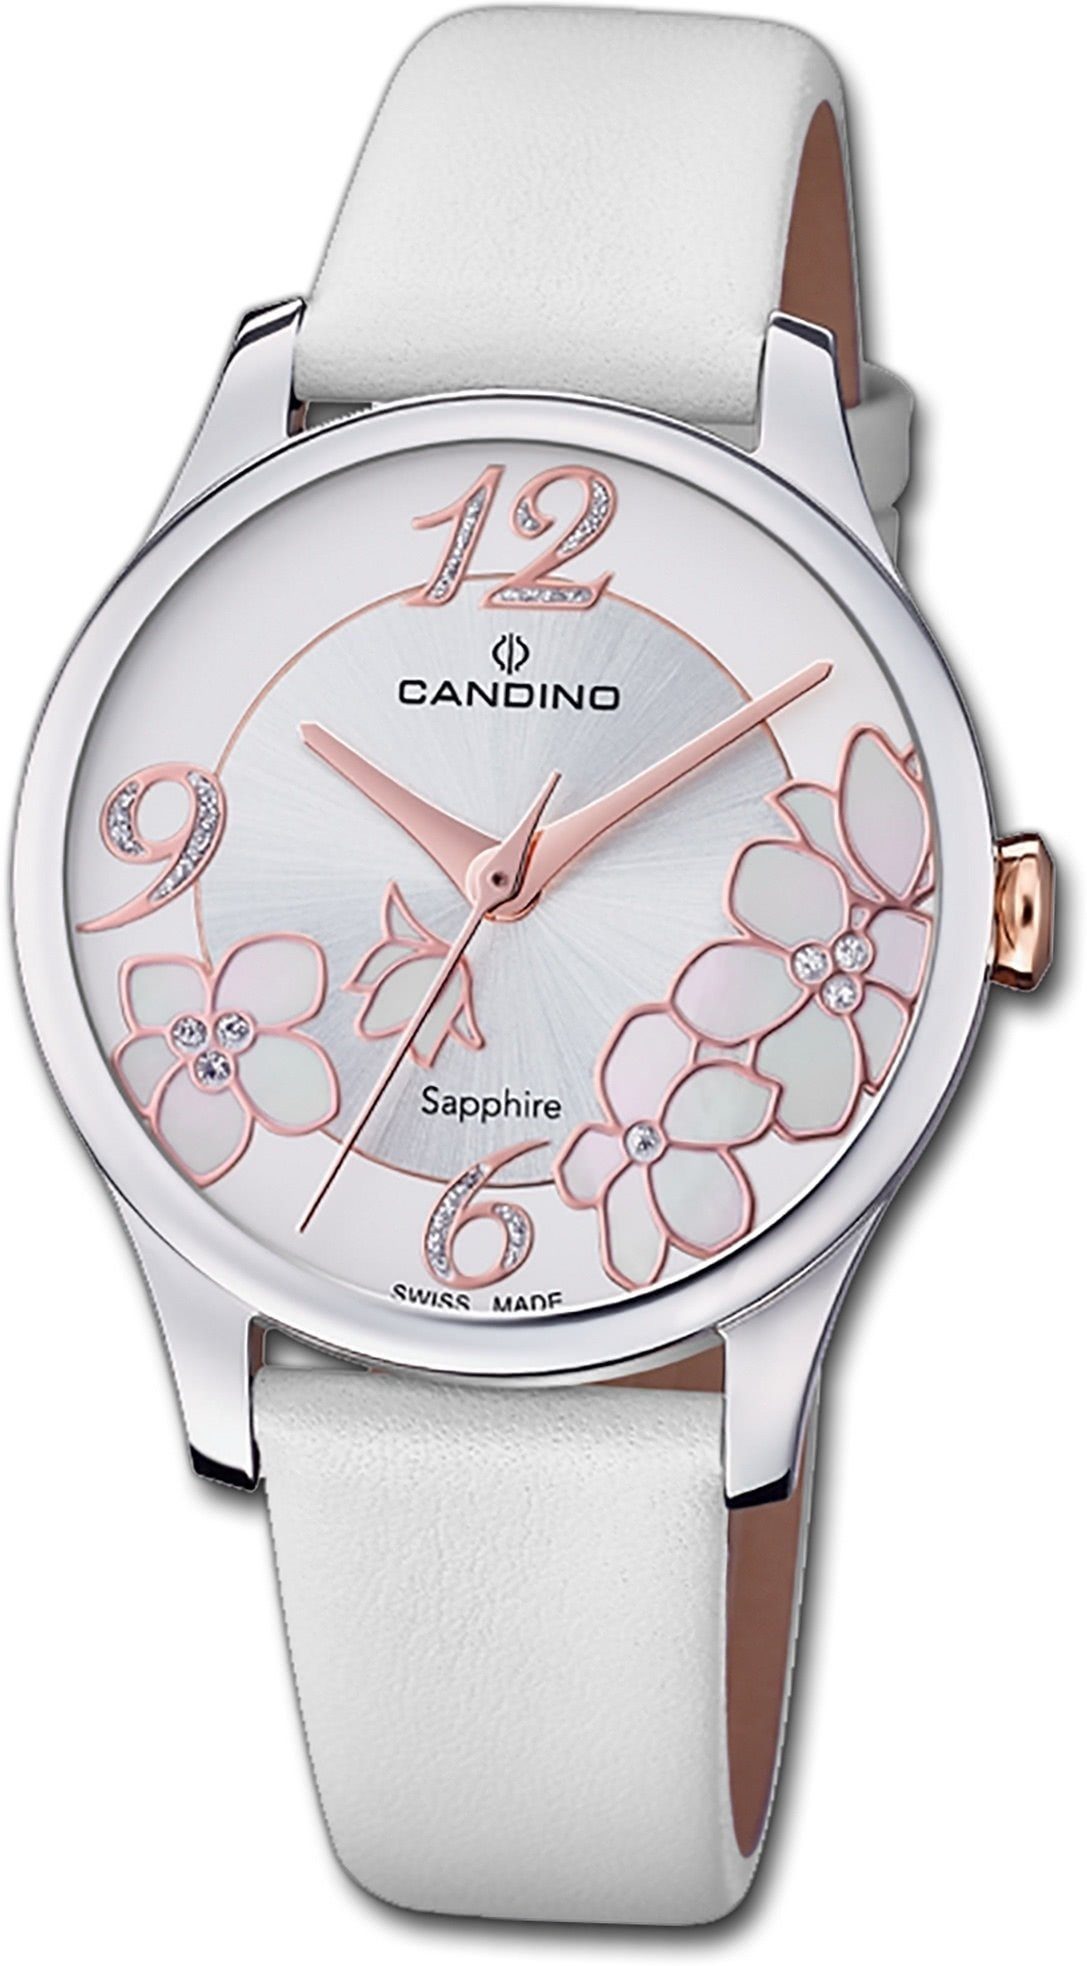 Candino Quarzuhr Candino Leder Damen Uhr C4720/1, Damenuhr mit Lederarmband, rundes Gehäuse, mittel (ca. 33,5mm), Fashio